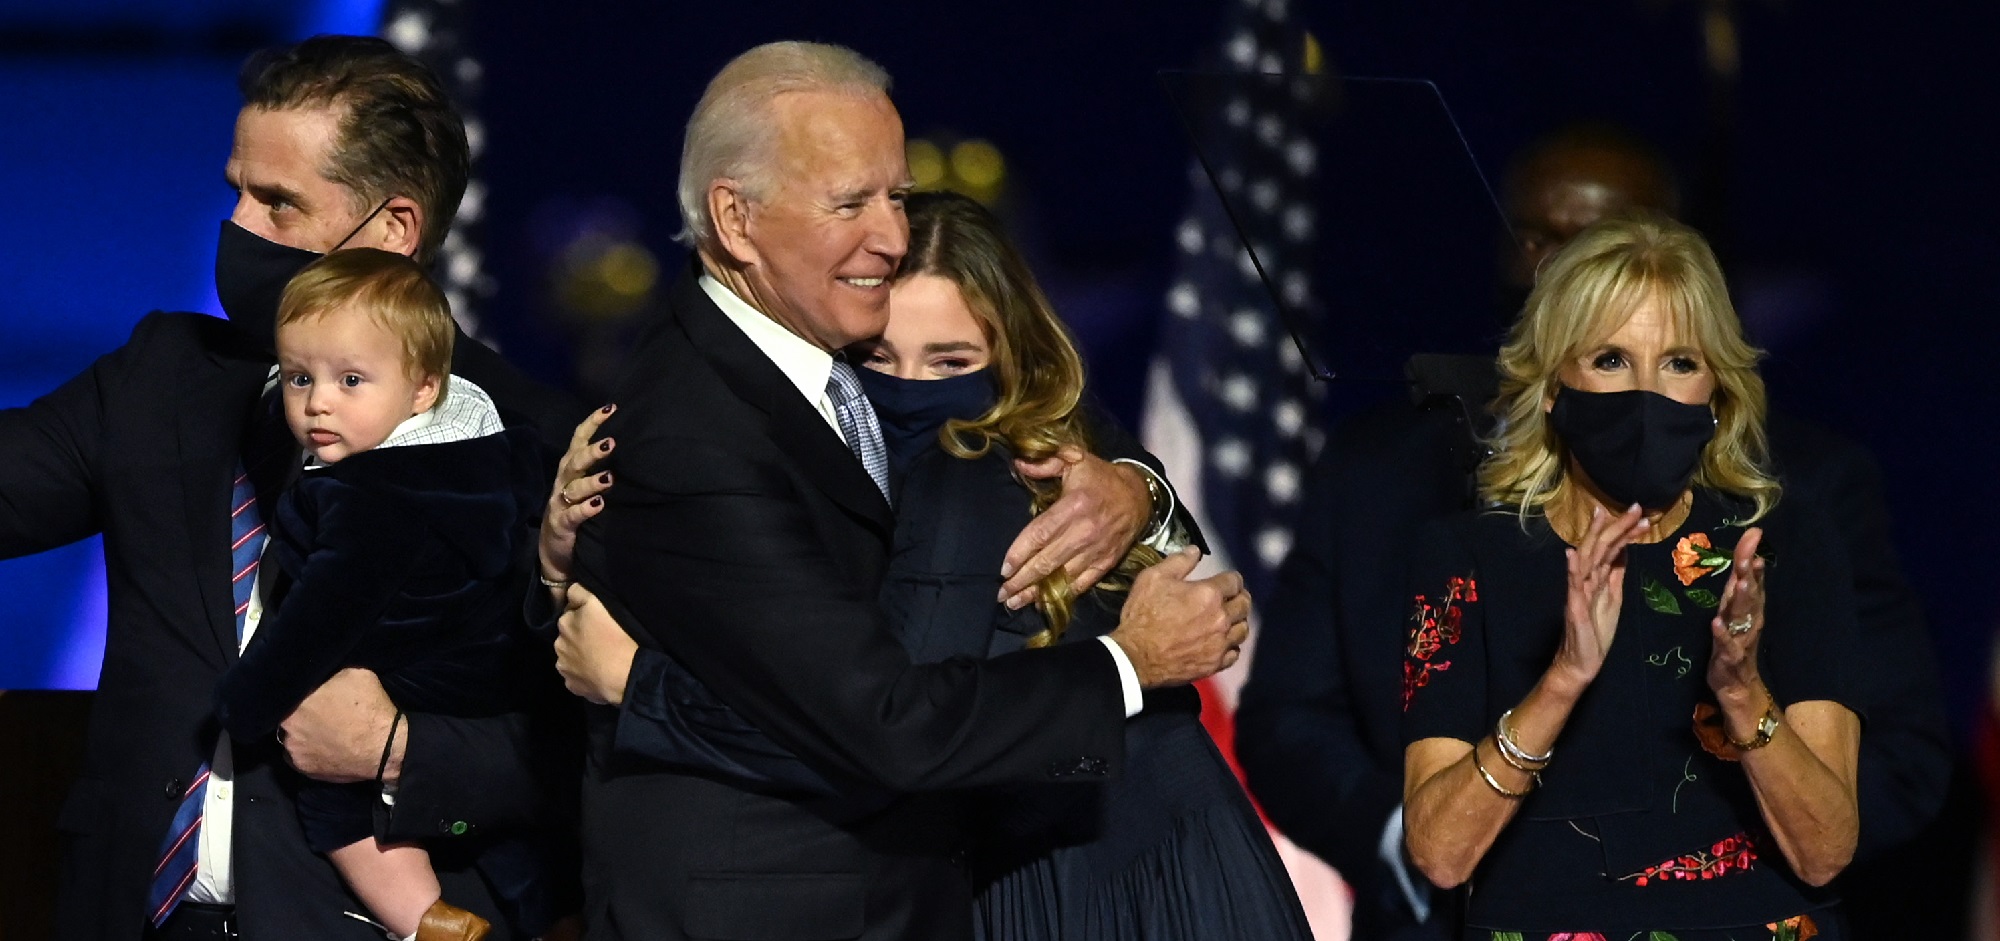 Tragedias, adicciones y una nueva oportunidad: los Biden, la nueva "primera familia" de EEUU